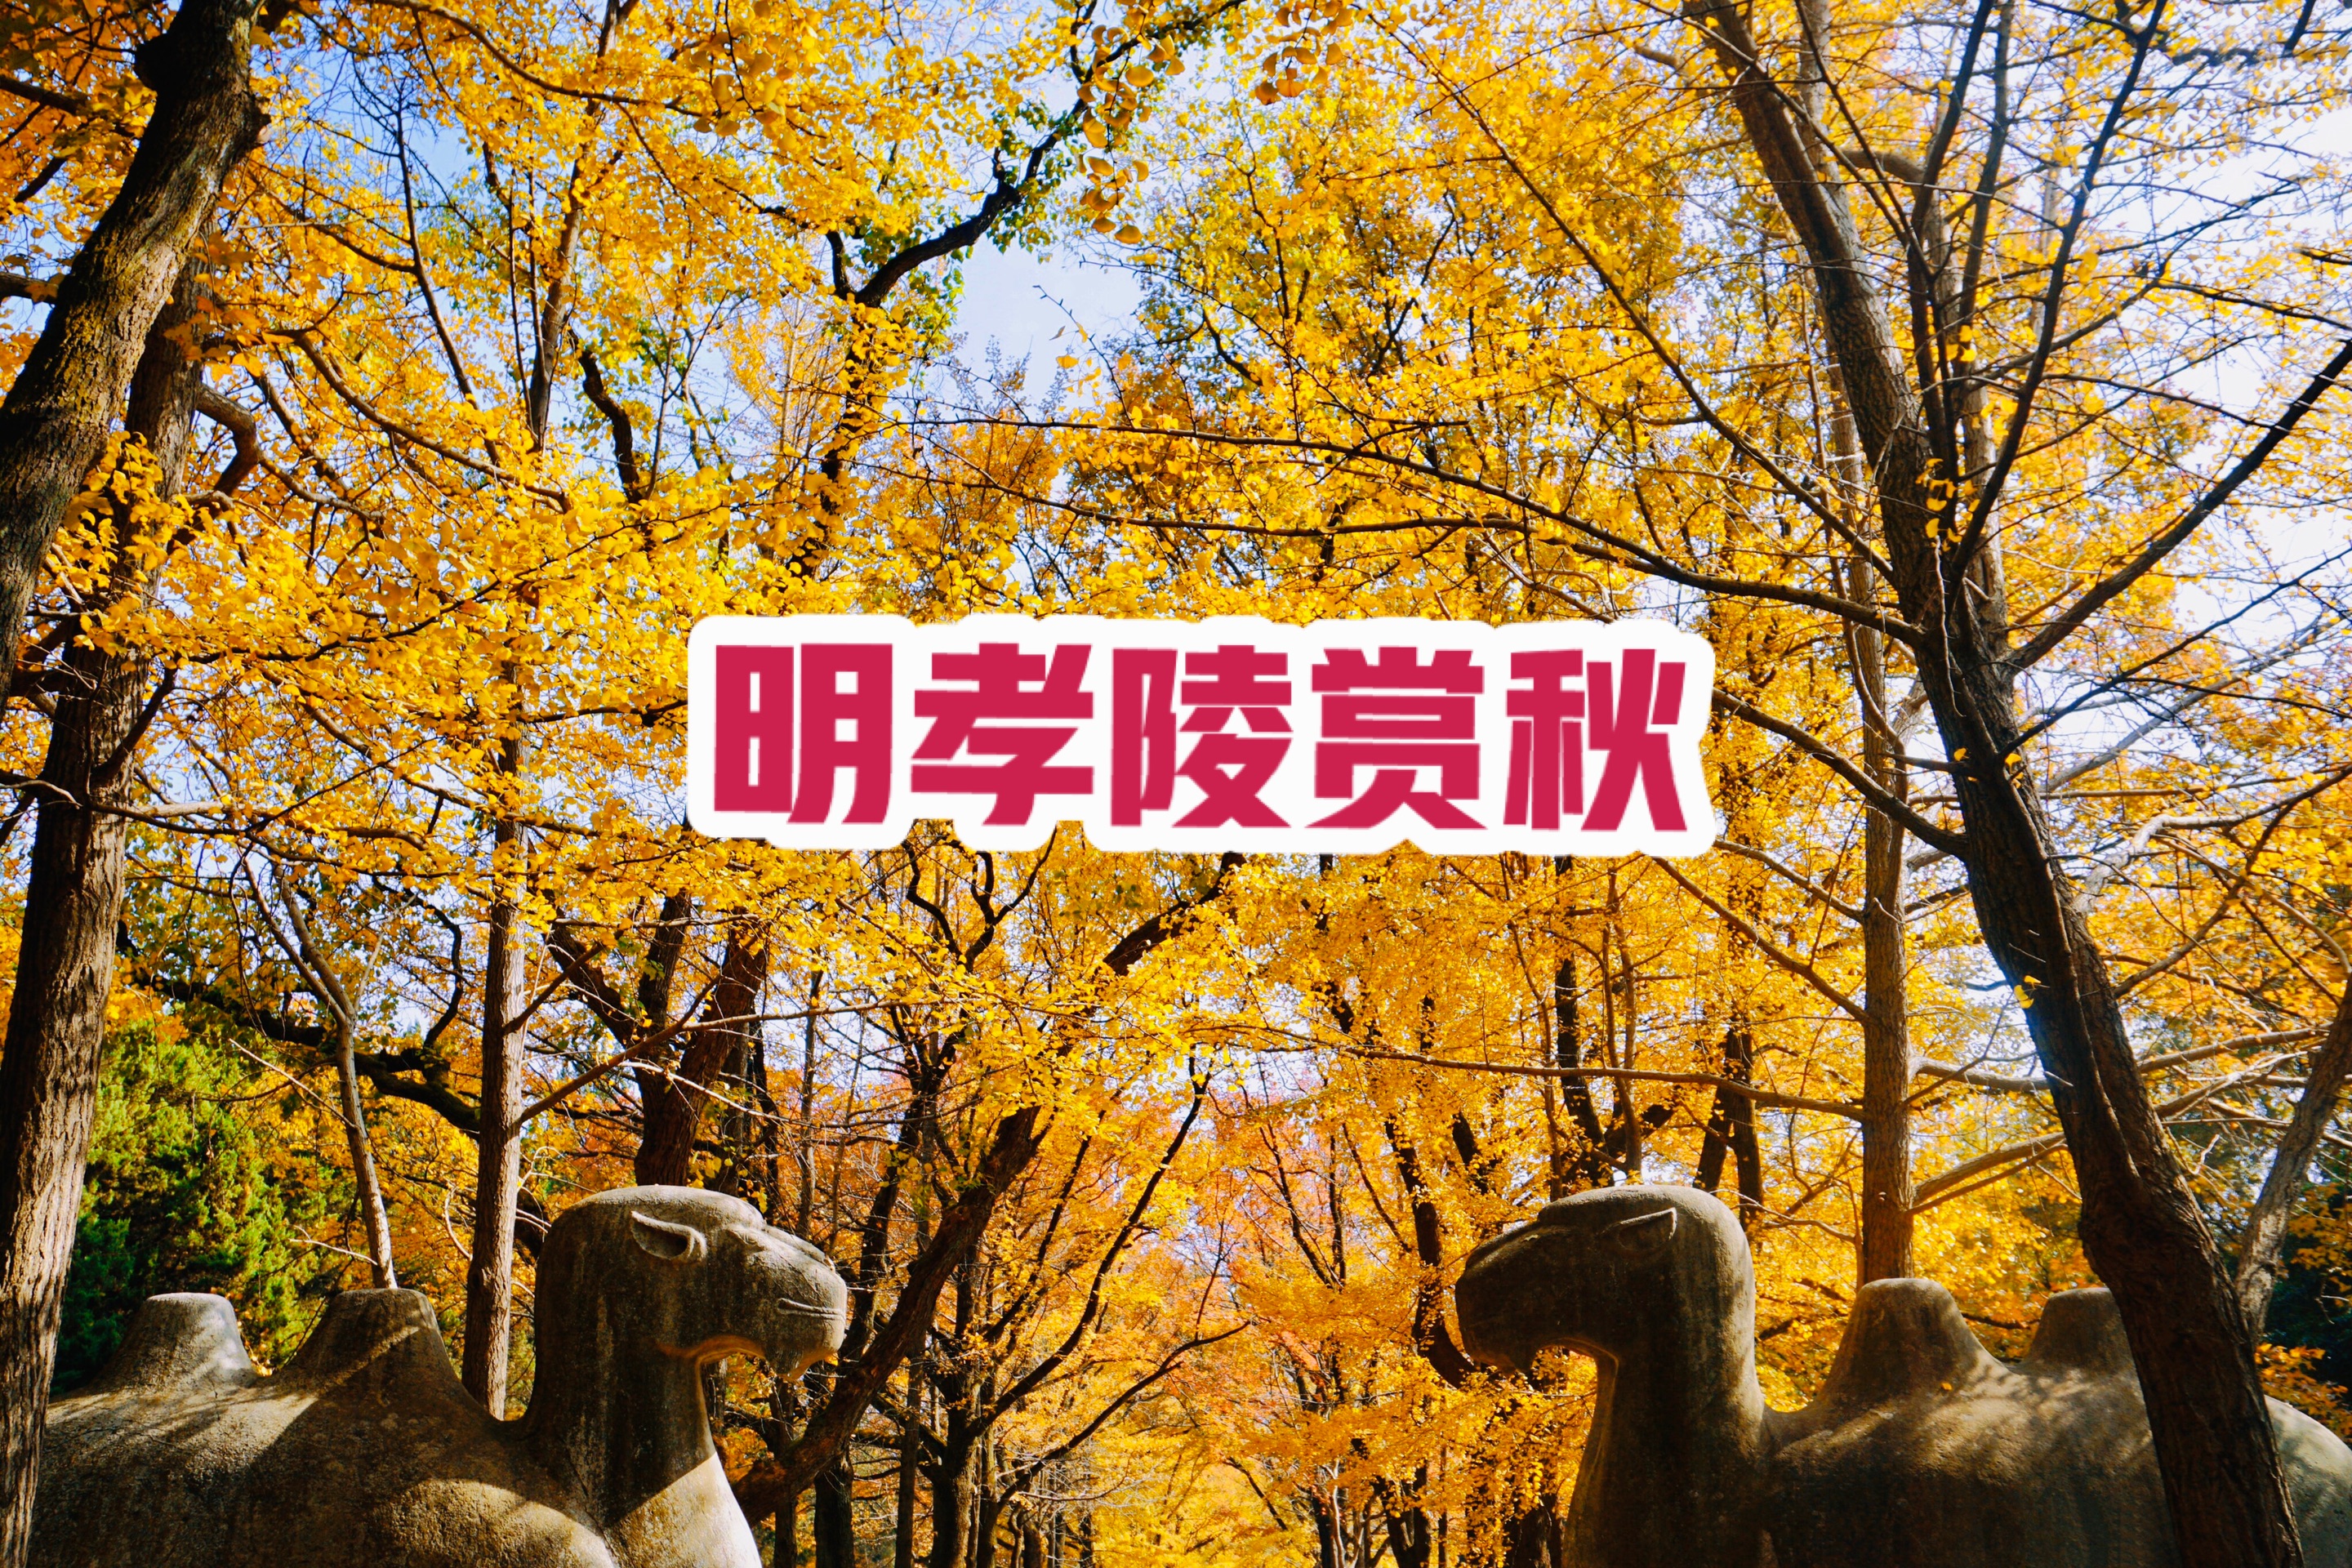 明孝陵景区-南京最美600米深秋美景最佳观赏期值得一去